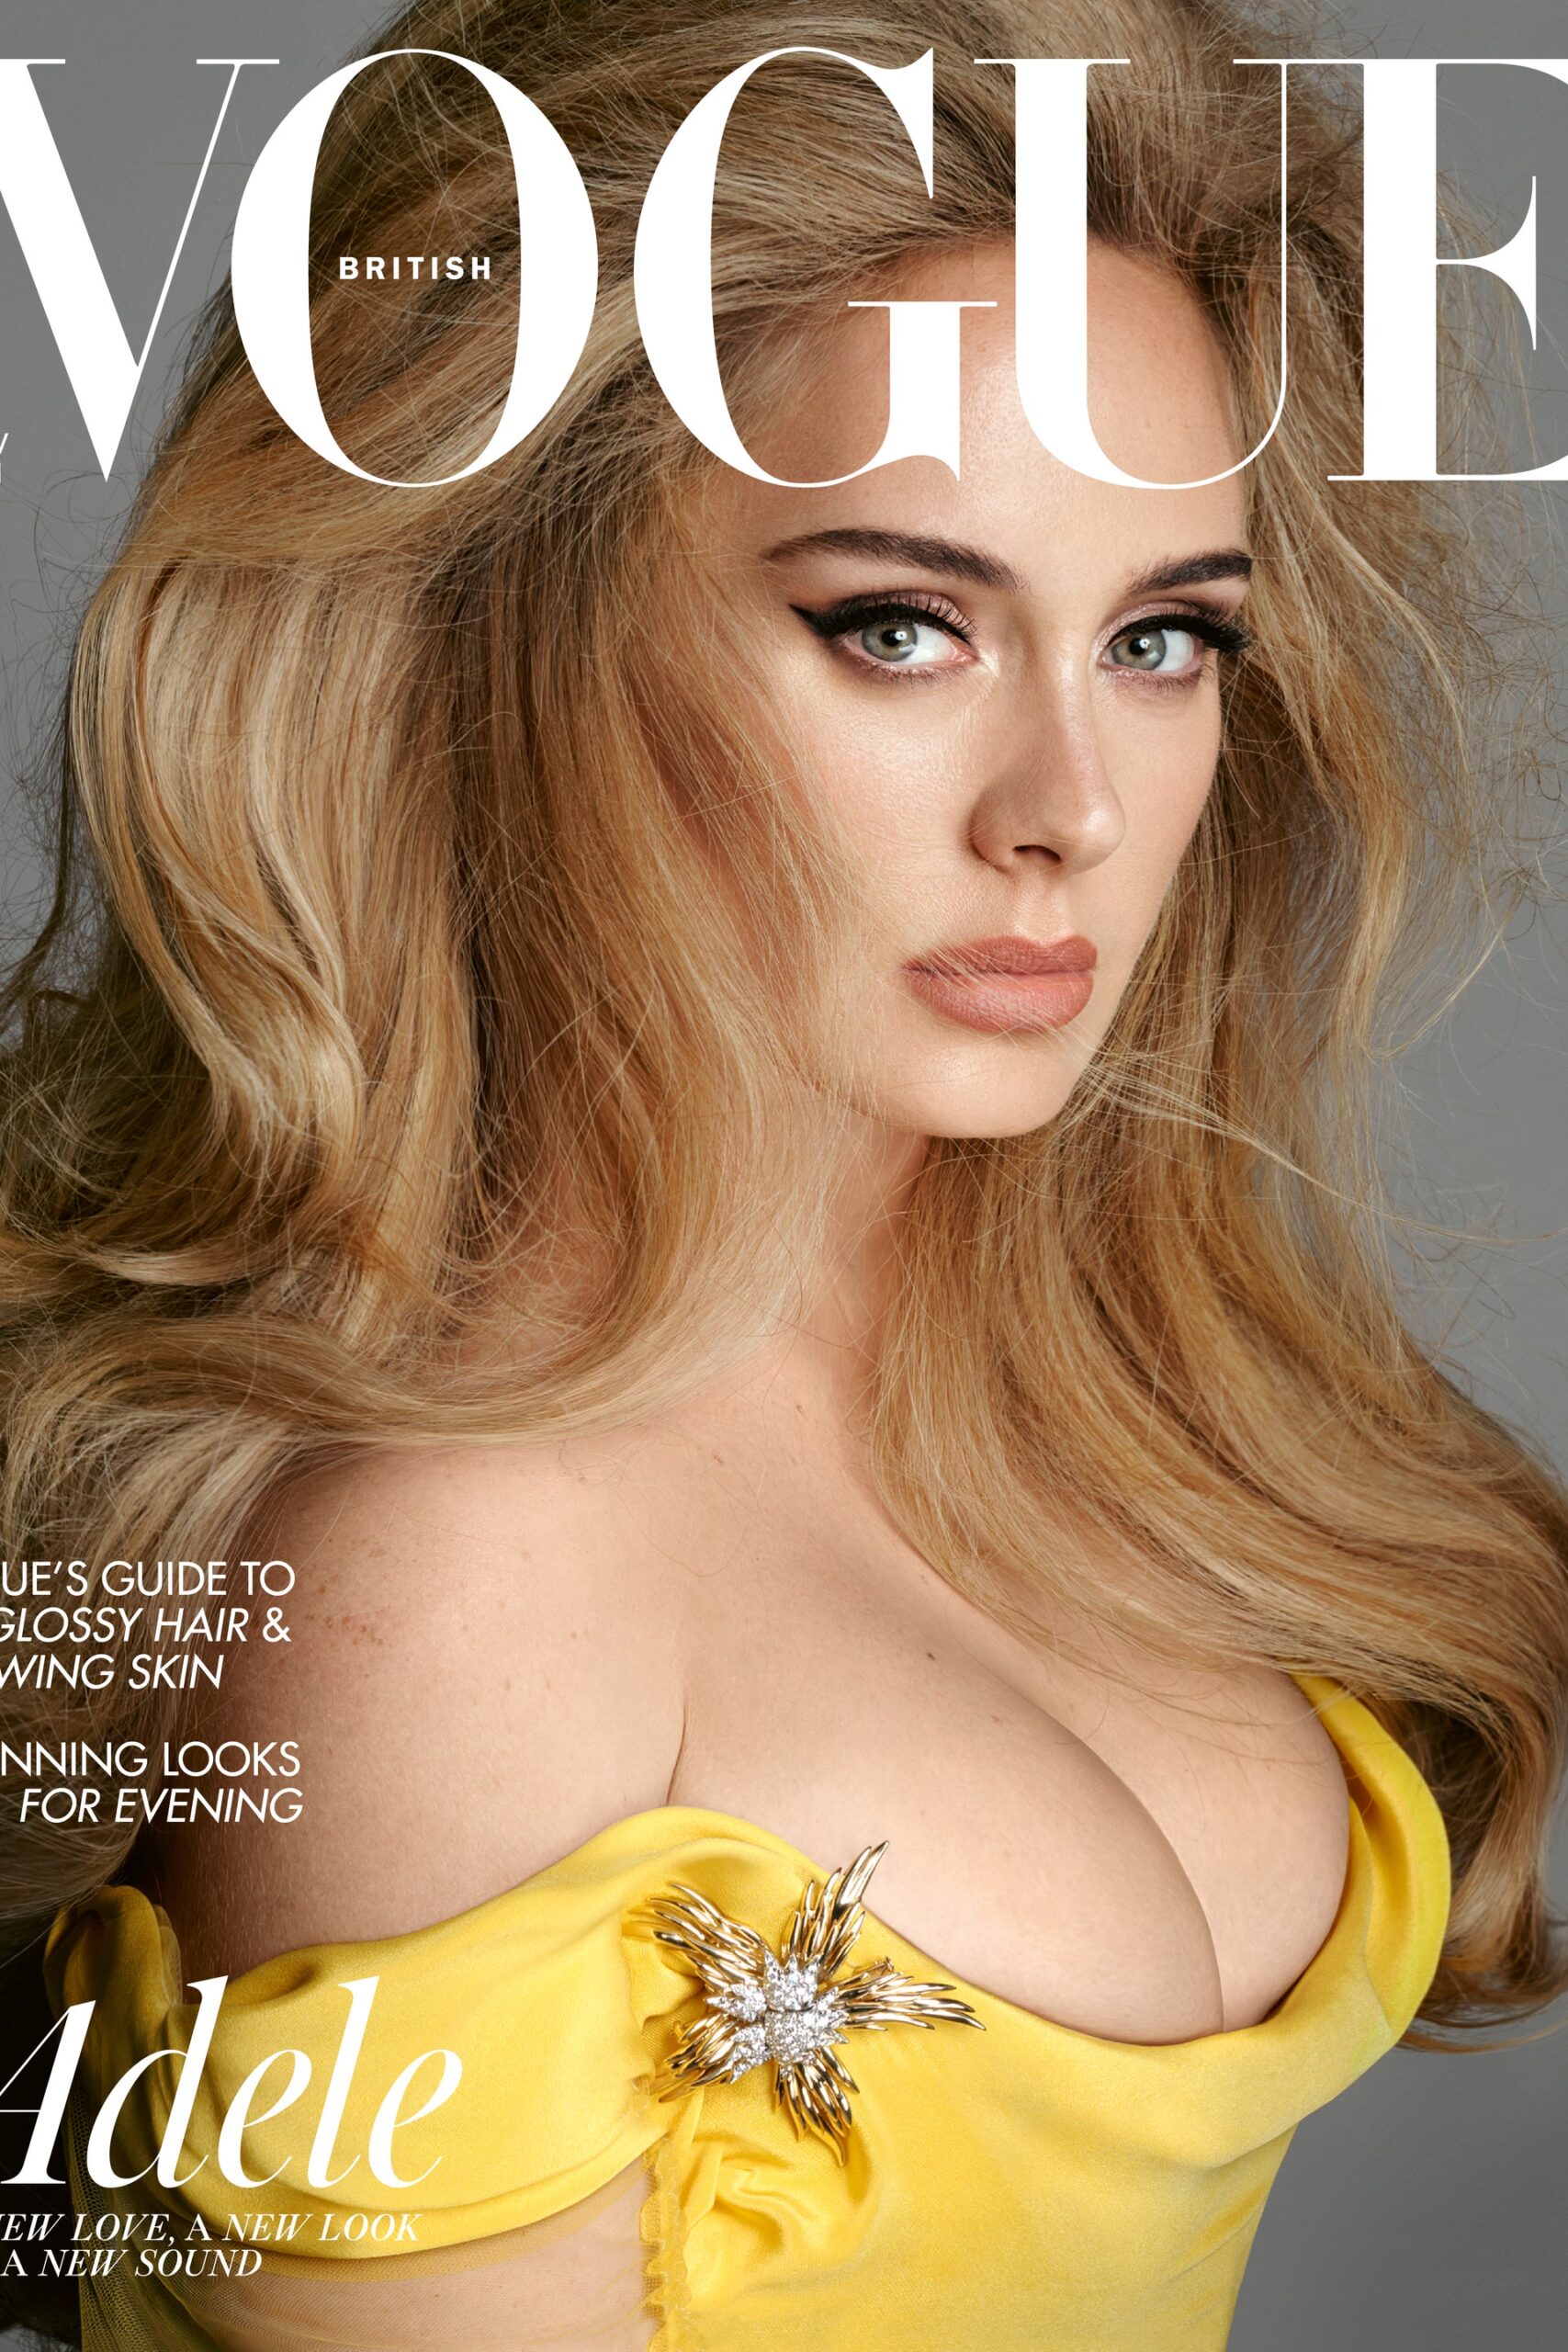 Découvrez les photos sublimes d'Adèle publiées par le magazine "Vogue" - adele 1 1 scaled